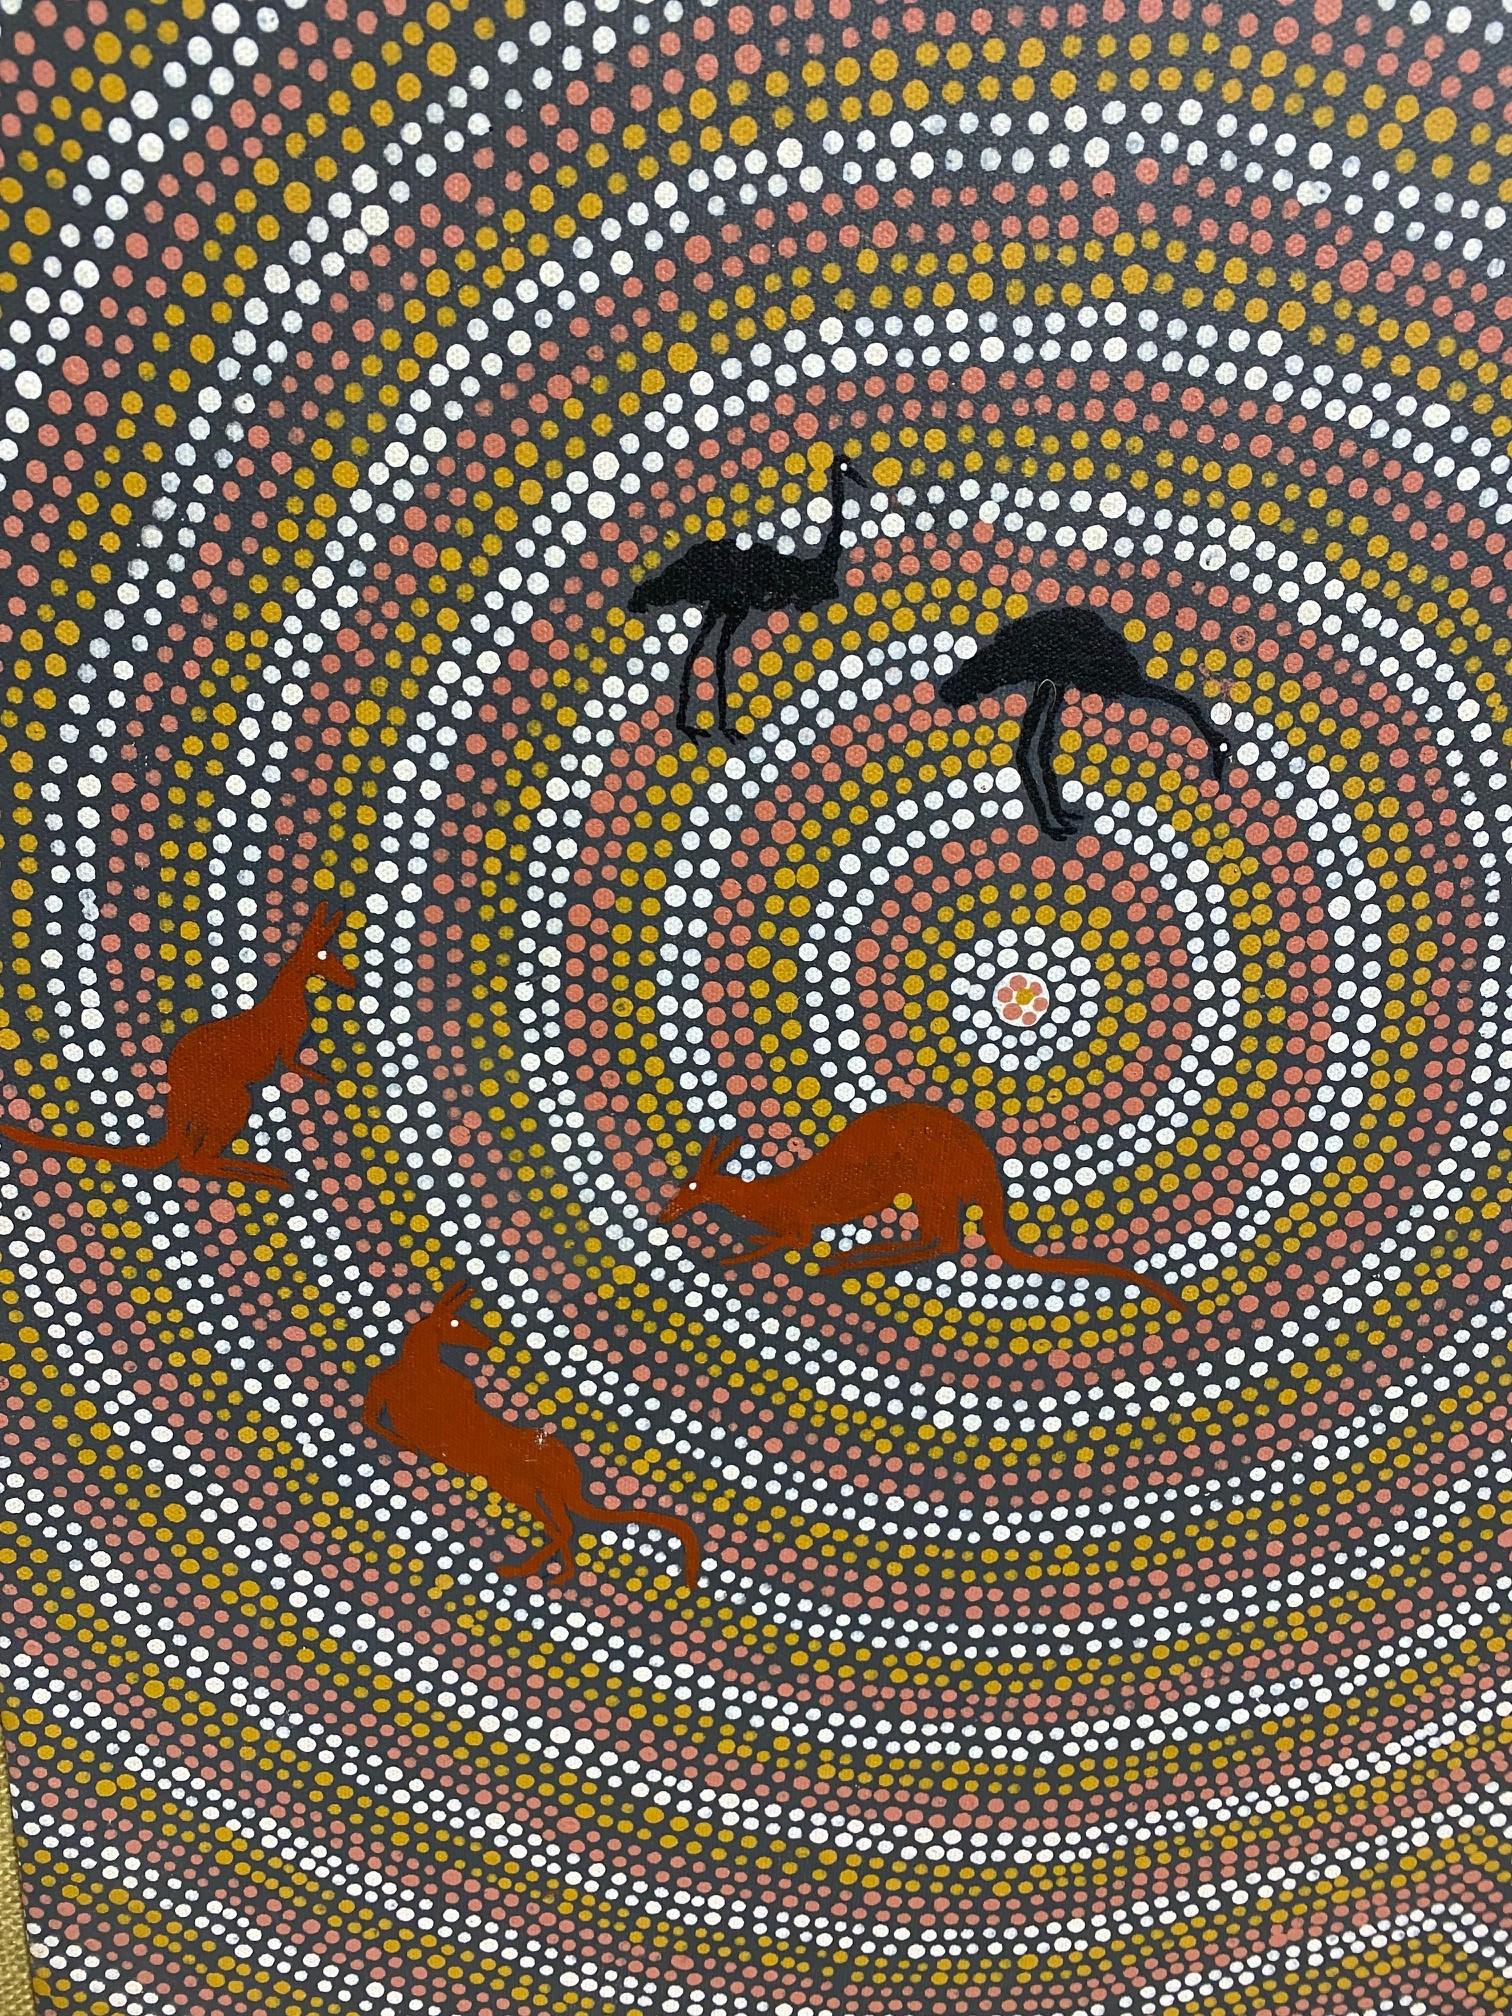 Australian Aboriginal Art Barbara Charles Napaltjarri Hunting Dreaming Painting For Sale 1